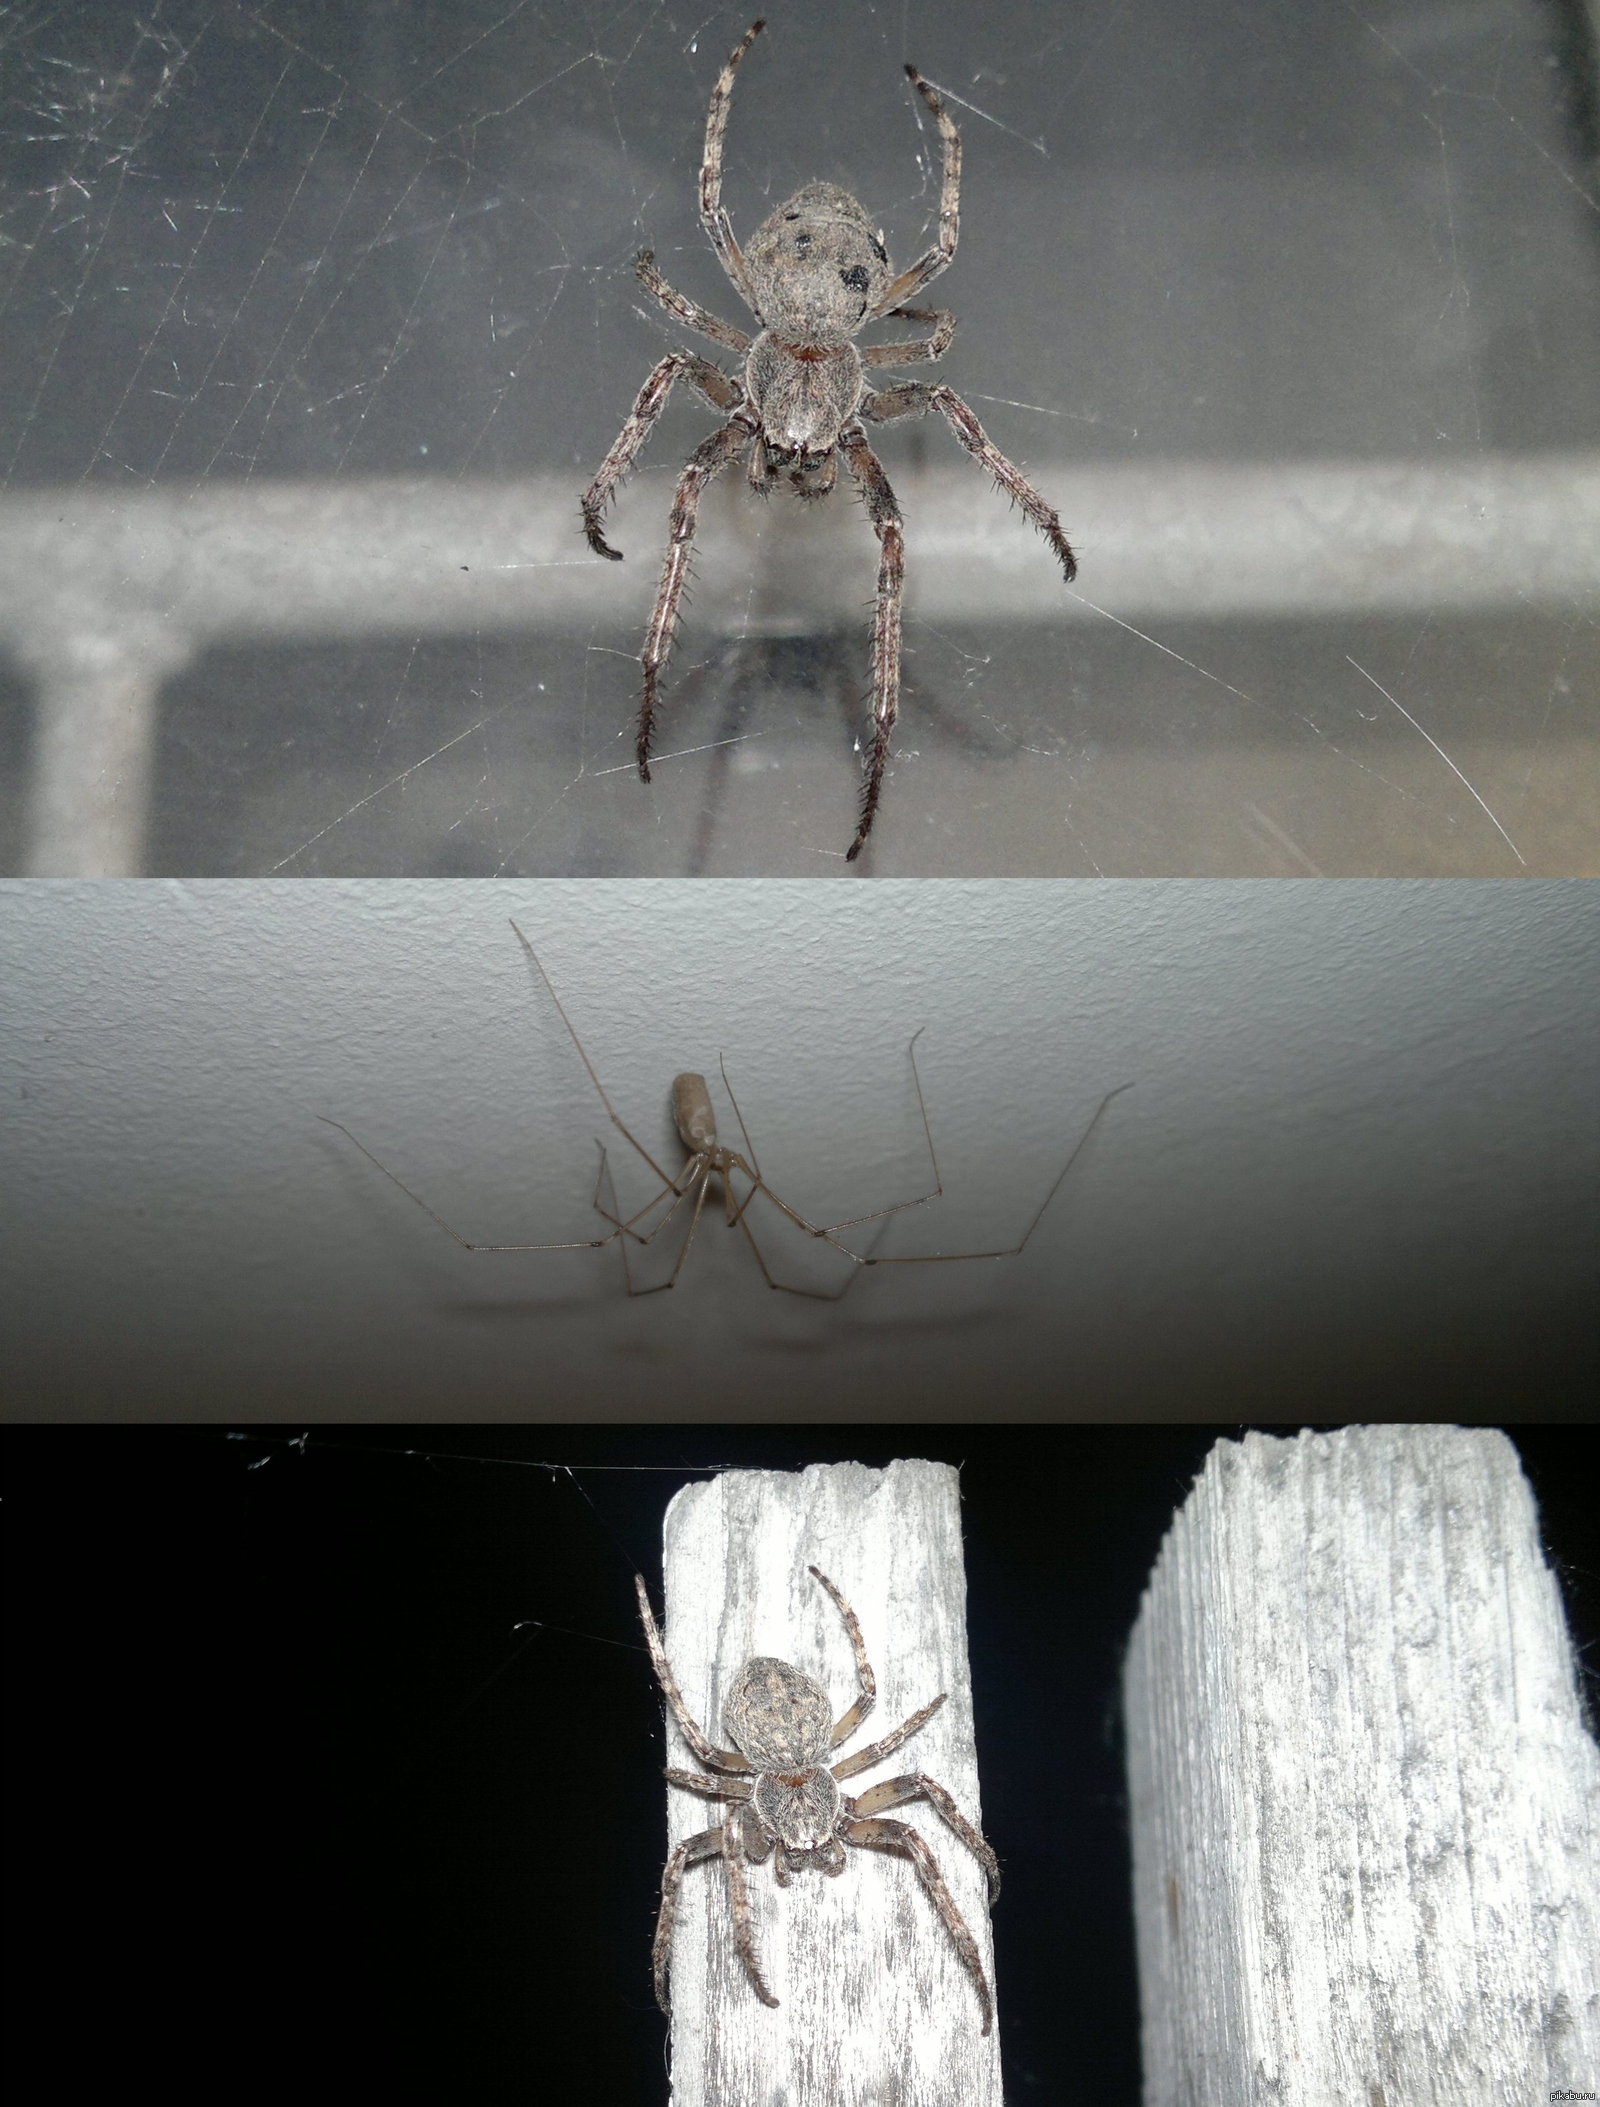 Пауки в доме как избавиться домашних условиях. Пауки в доме. Квартирные пауки. Домовой паук в квартире. Белый паук в частном доме.